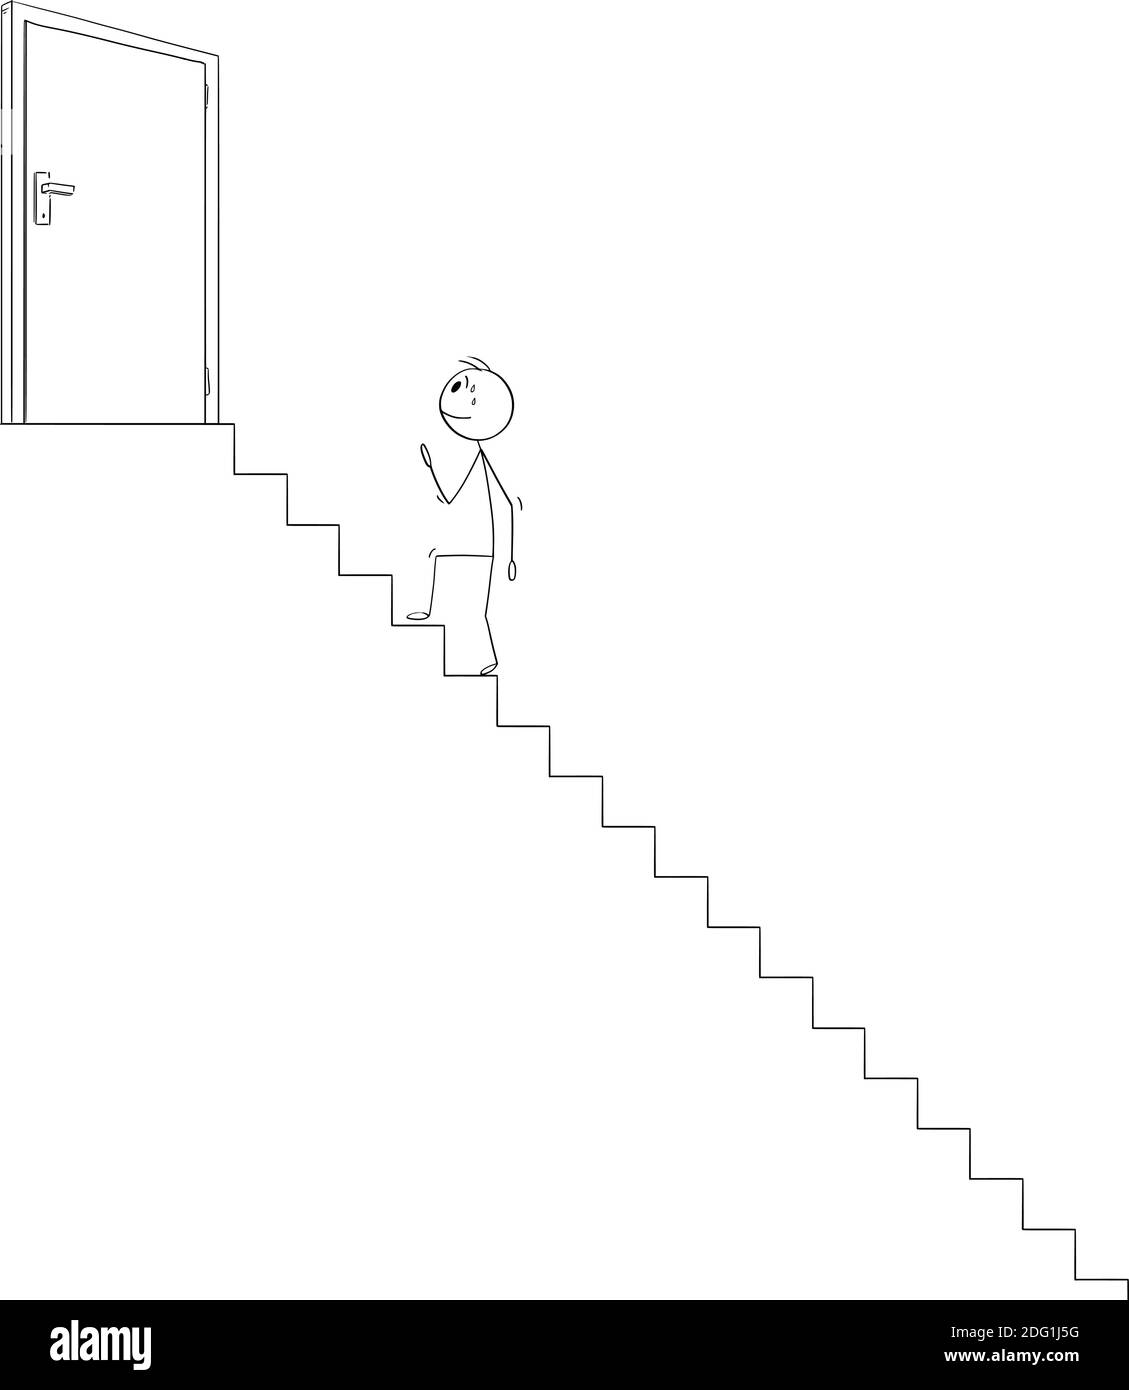 Vektor Cartoon Stick Figur Illustration von Mann oder Geschäftsmann Treppen steigen zu erreichen und öffnen Tür auf der Oberseite führt zu Erfolg oder Sieg. Karrierekonzept. Stock Vektor